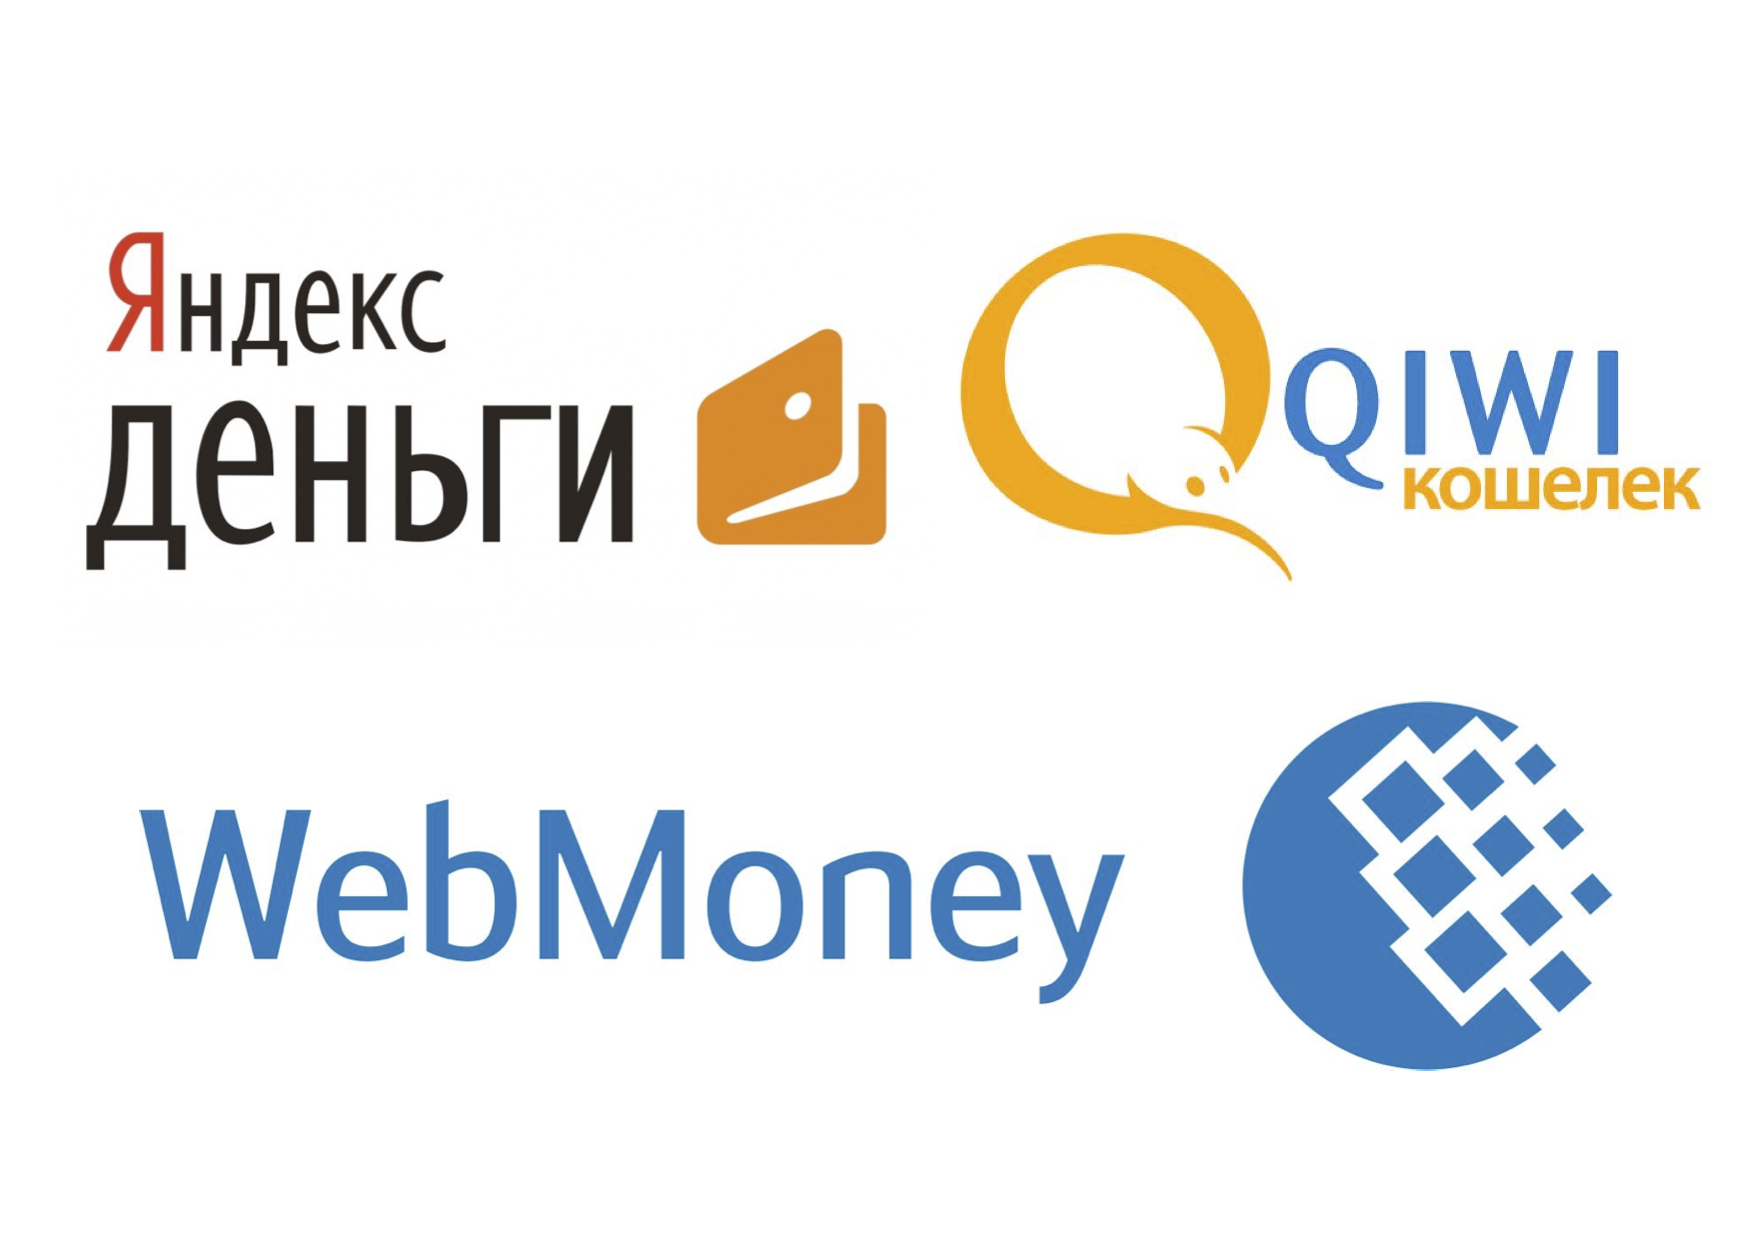 Нацбанк Украины запретил работу Webmoney, Яндекс.Деньги и QIWI